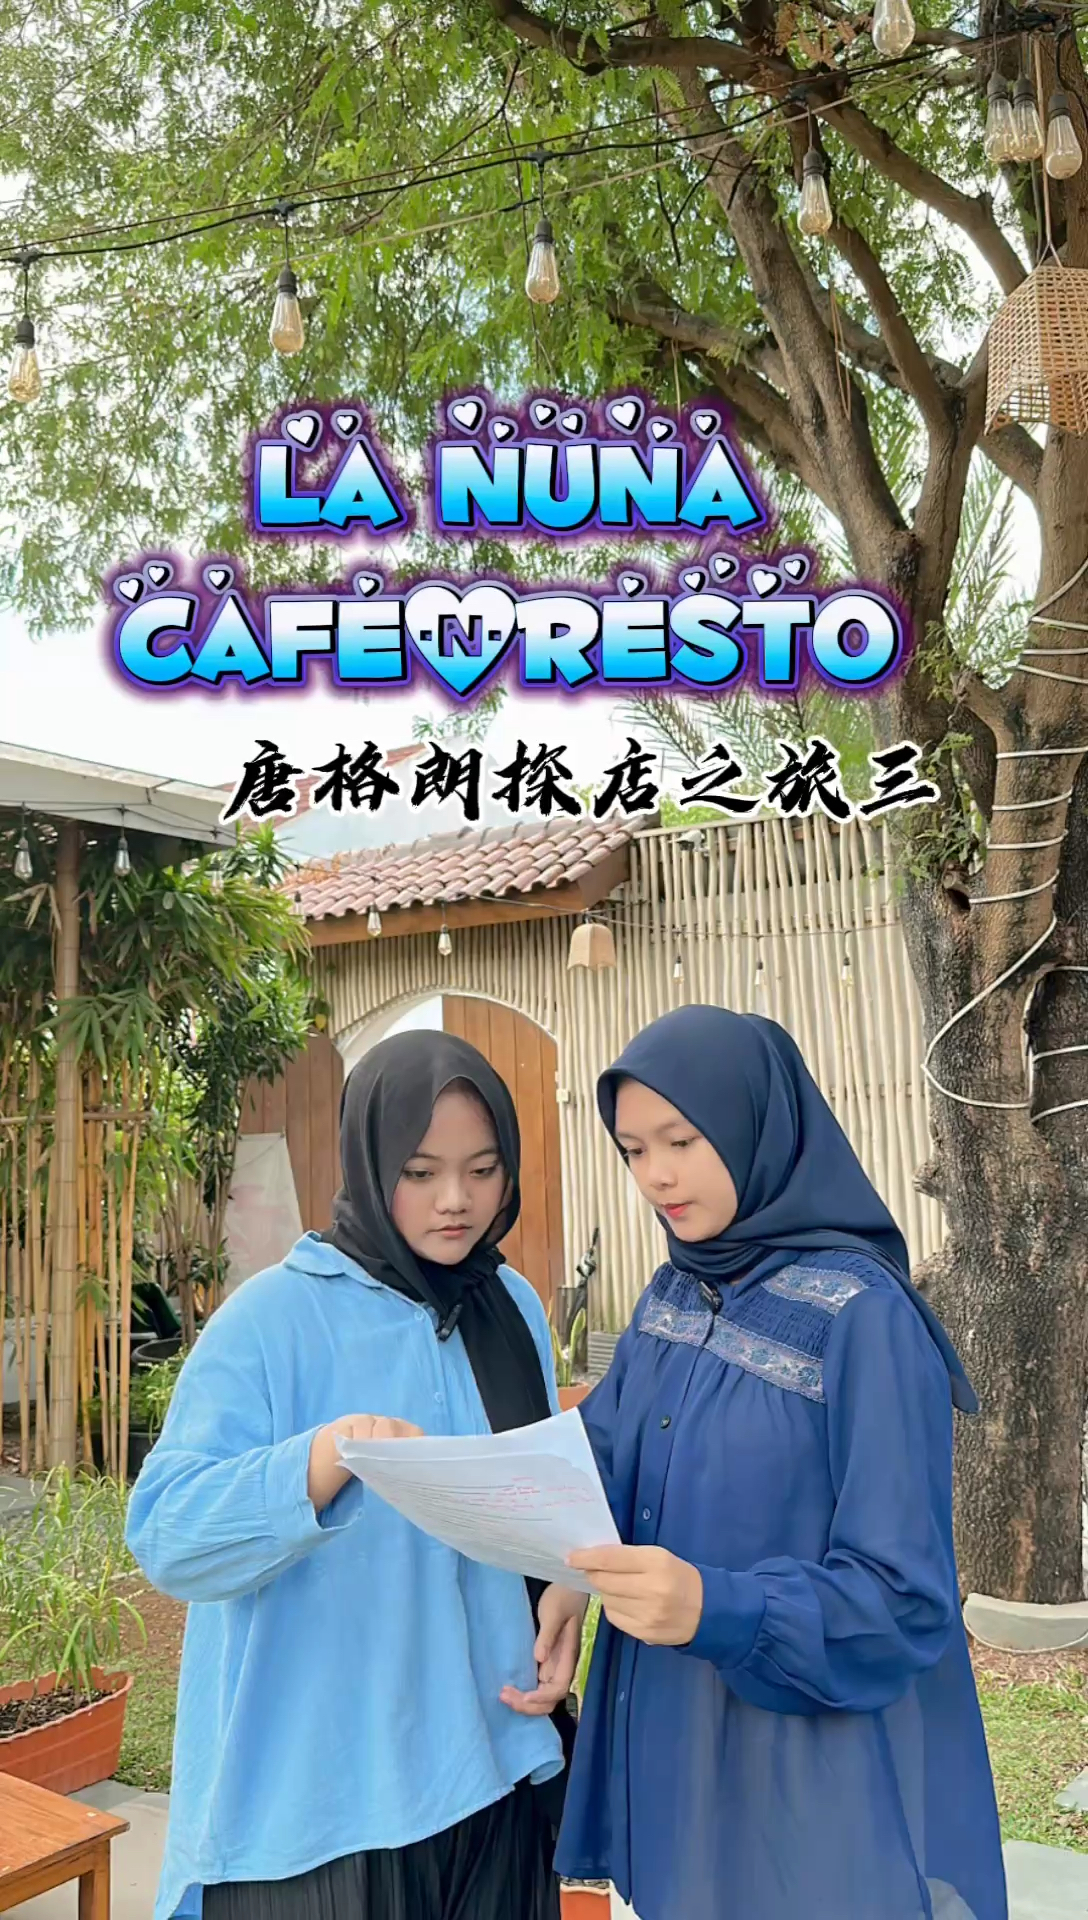 印尼唐格朗的La Nuna咖啡馆